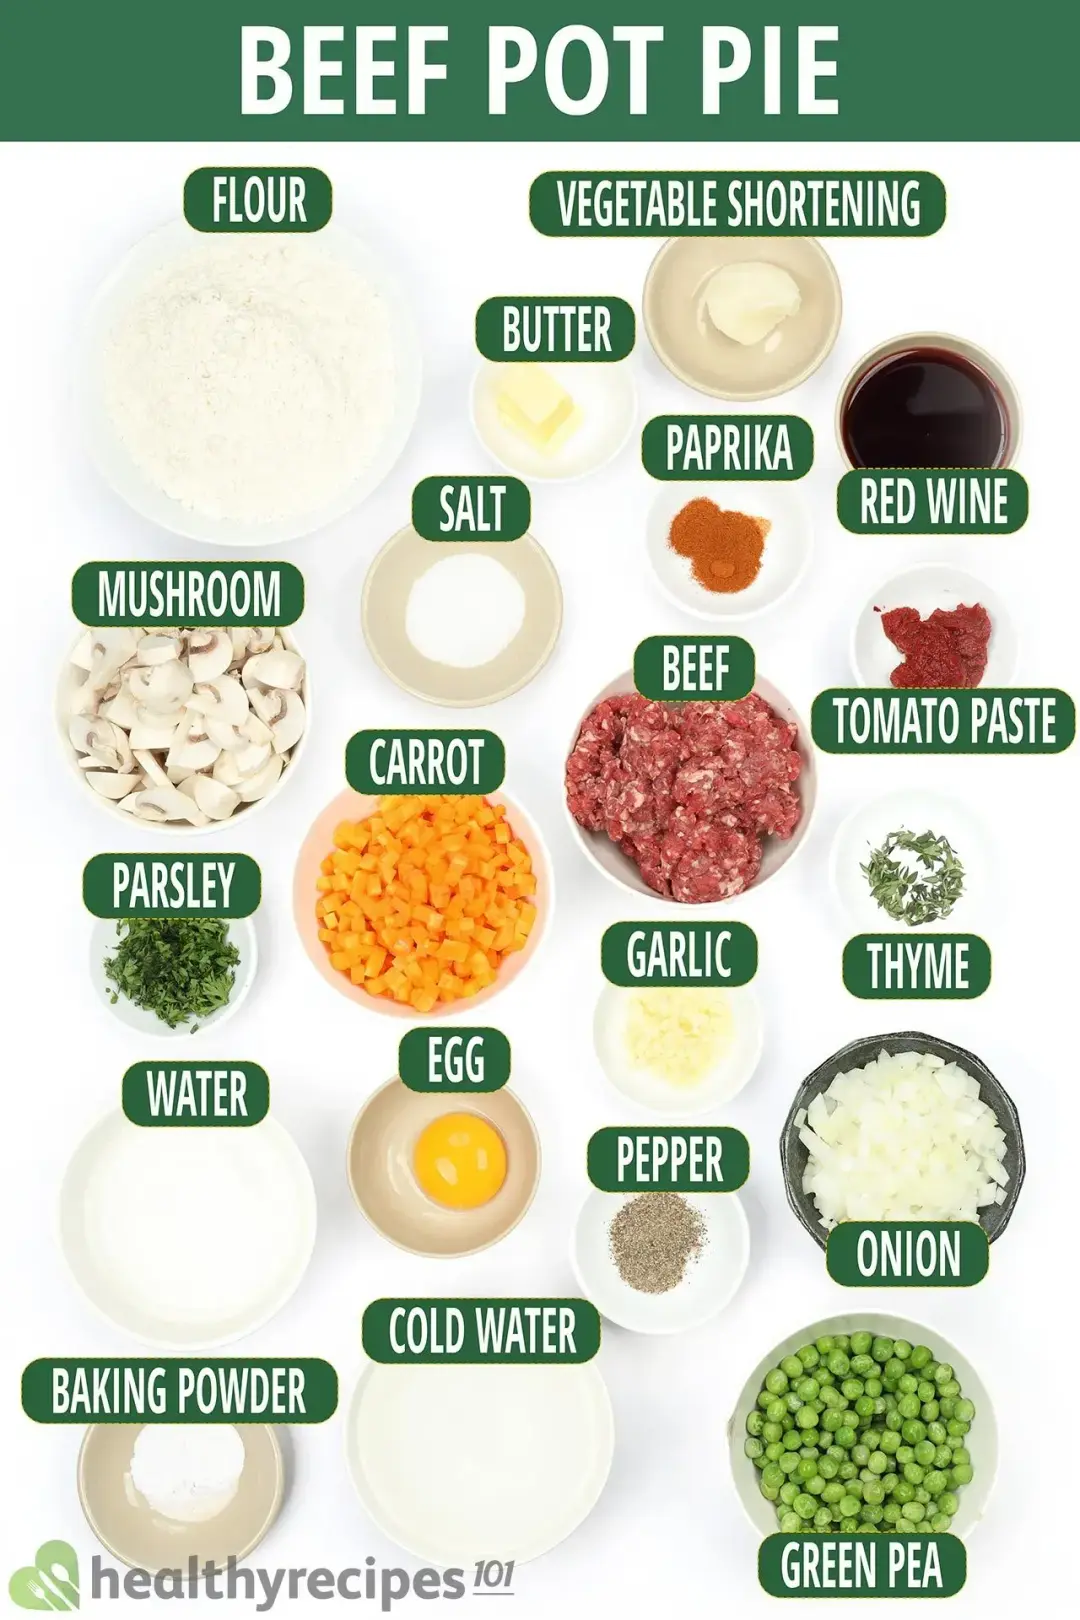 Ingredients for Beef Pot Pie